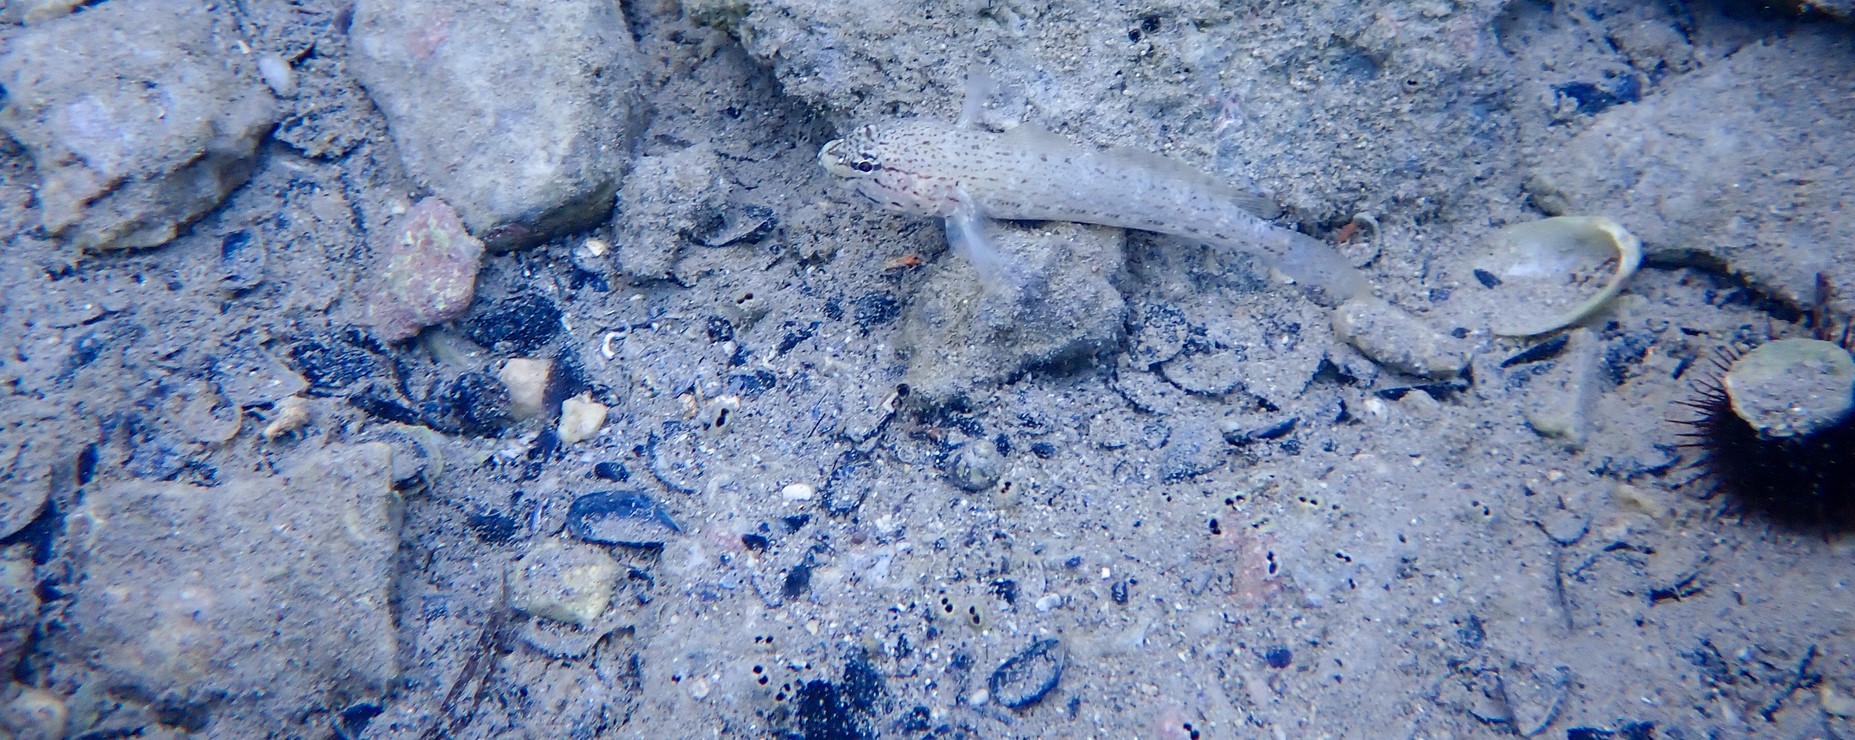 Streifengrundel (Gobius bucchichi) im Ambrakischen Golf